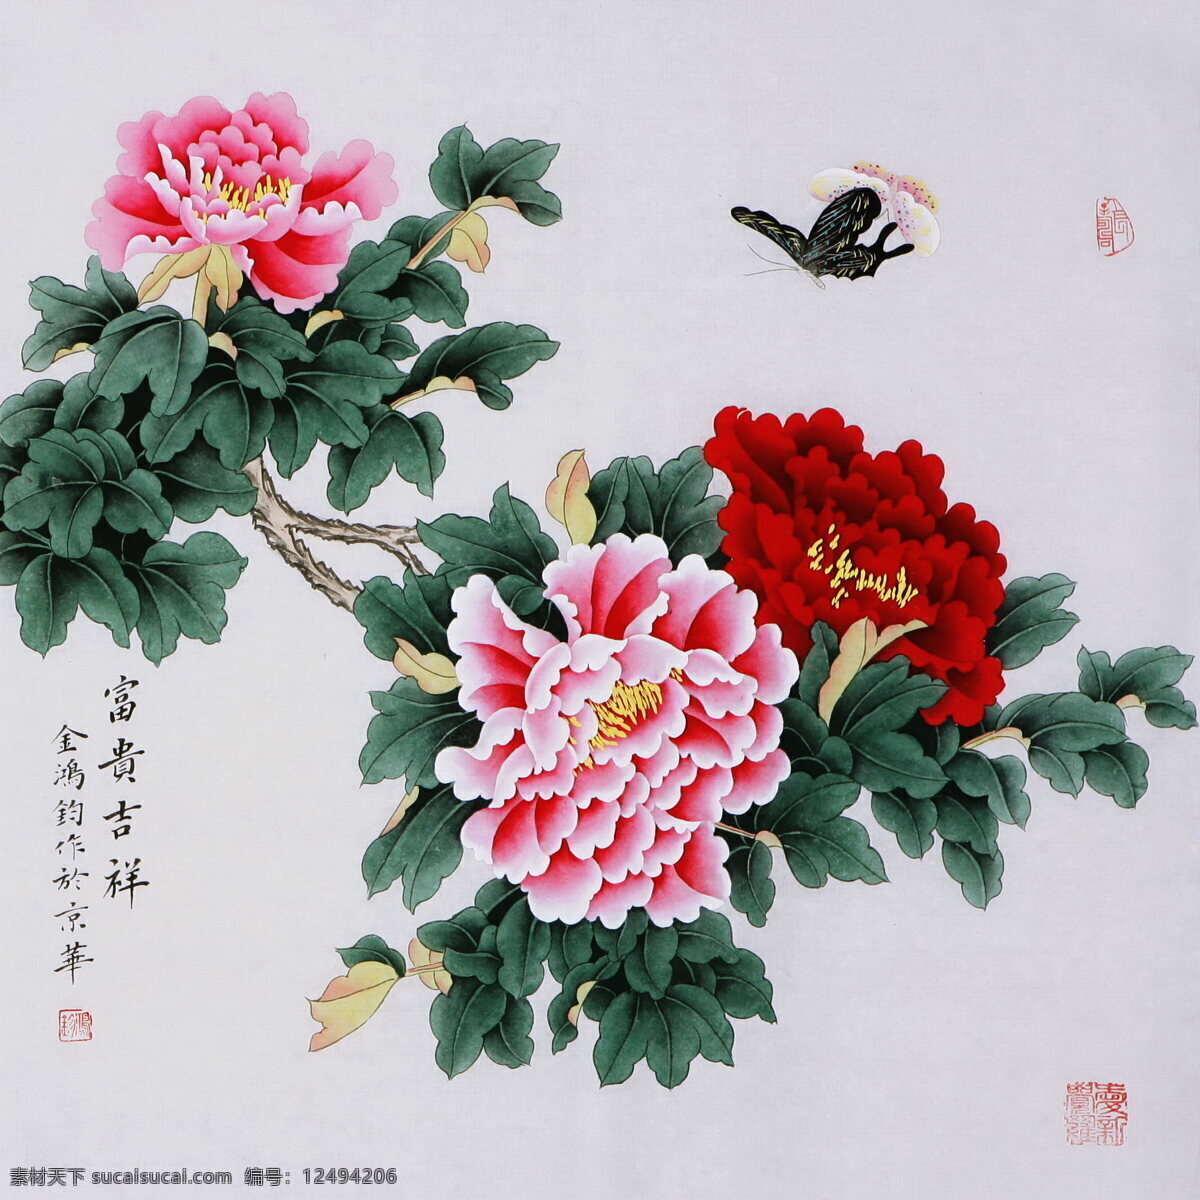 国画牡丹 工笔 国画 花卉 牡丹 蝴蝶 文化艺术 绘画书法